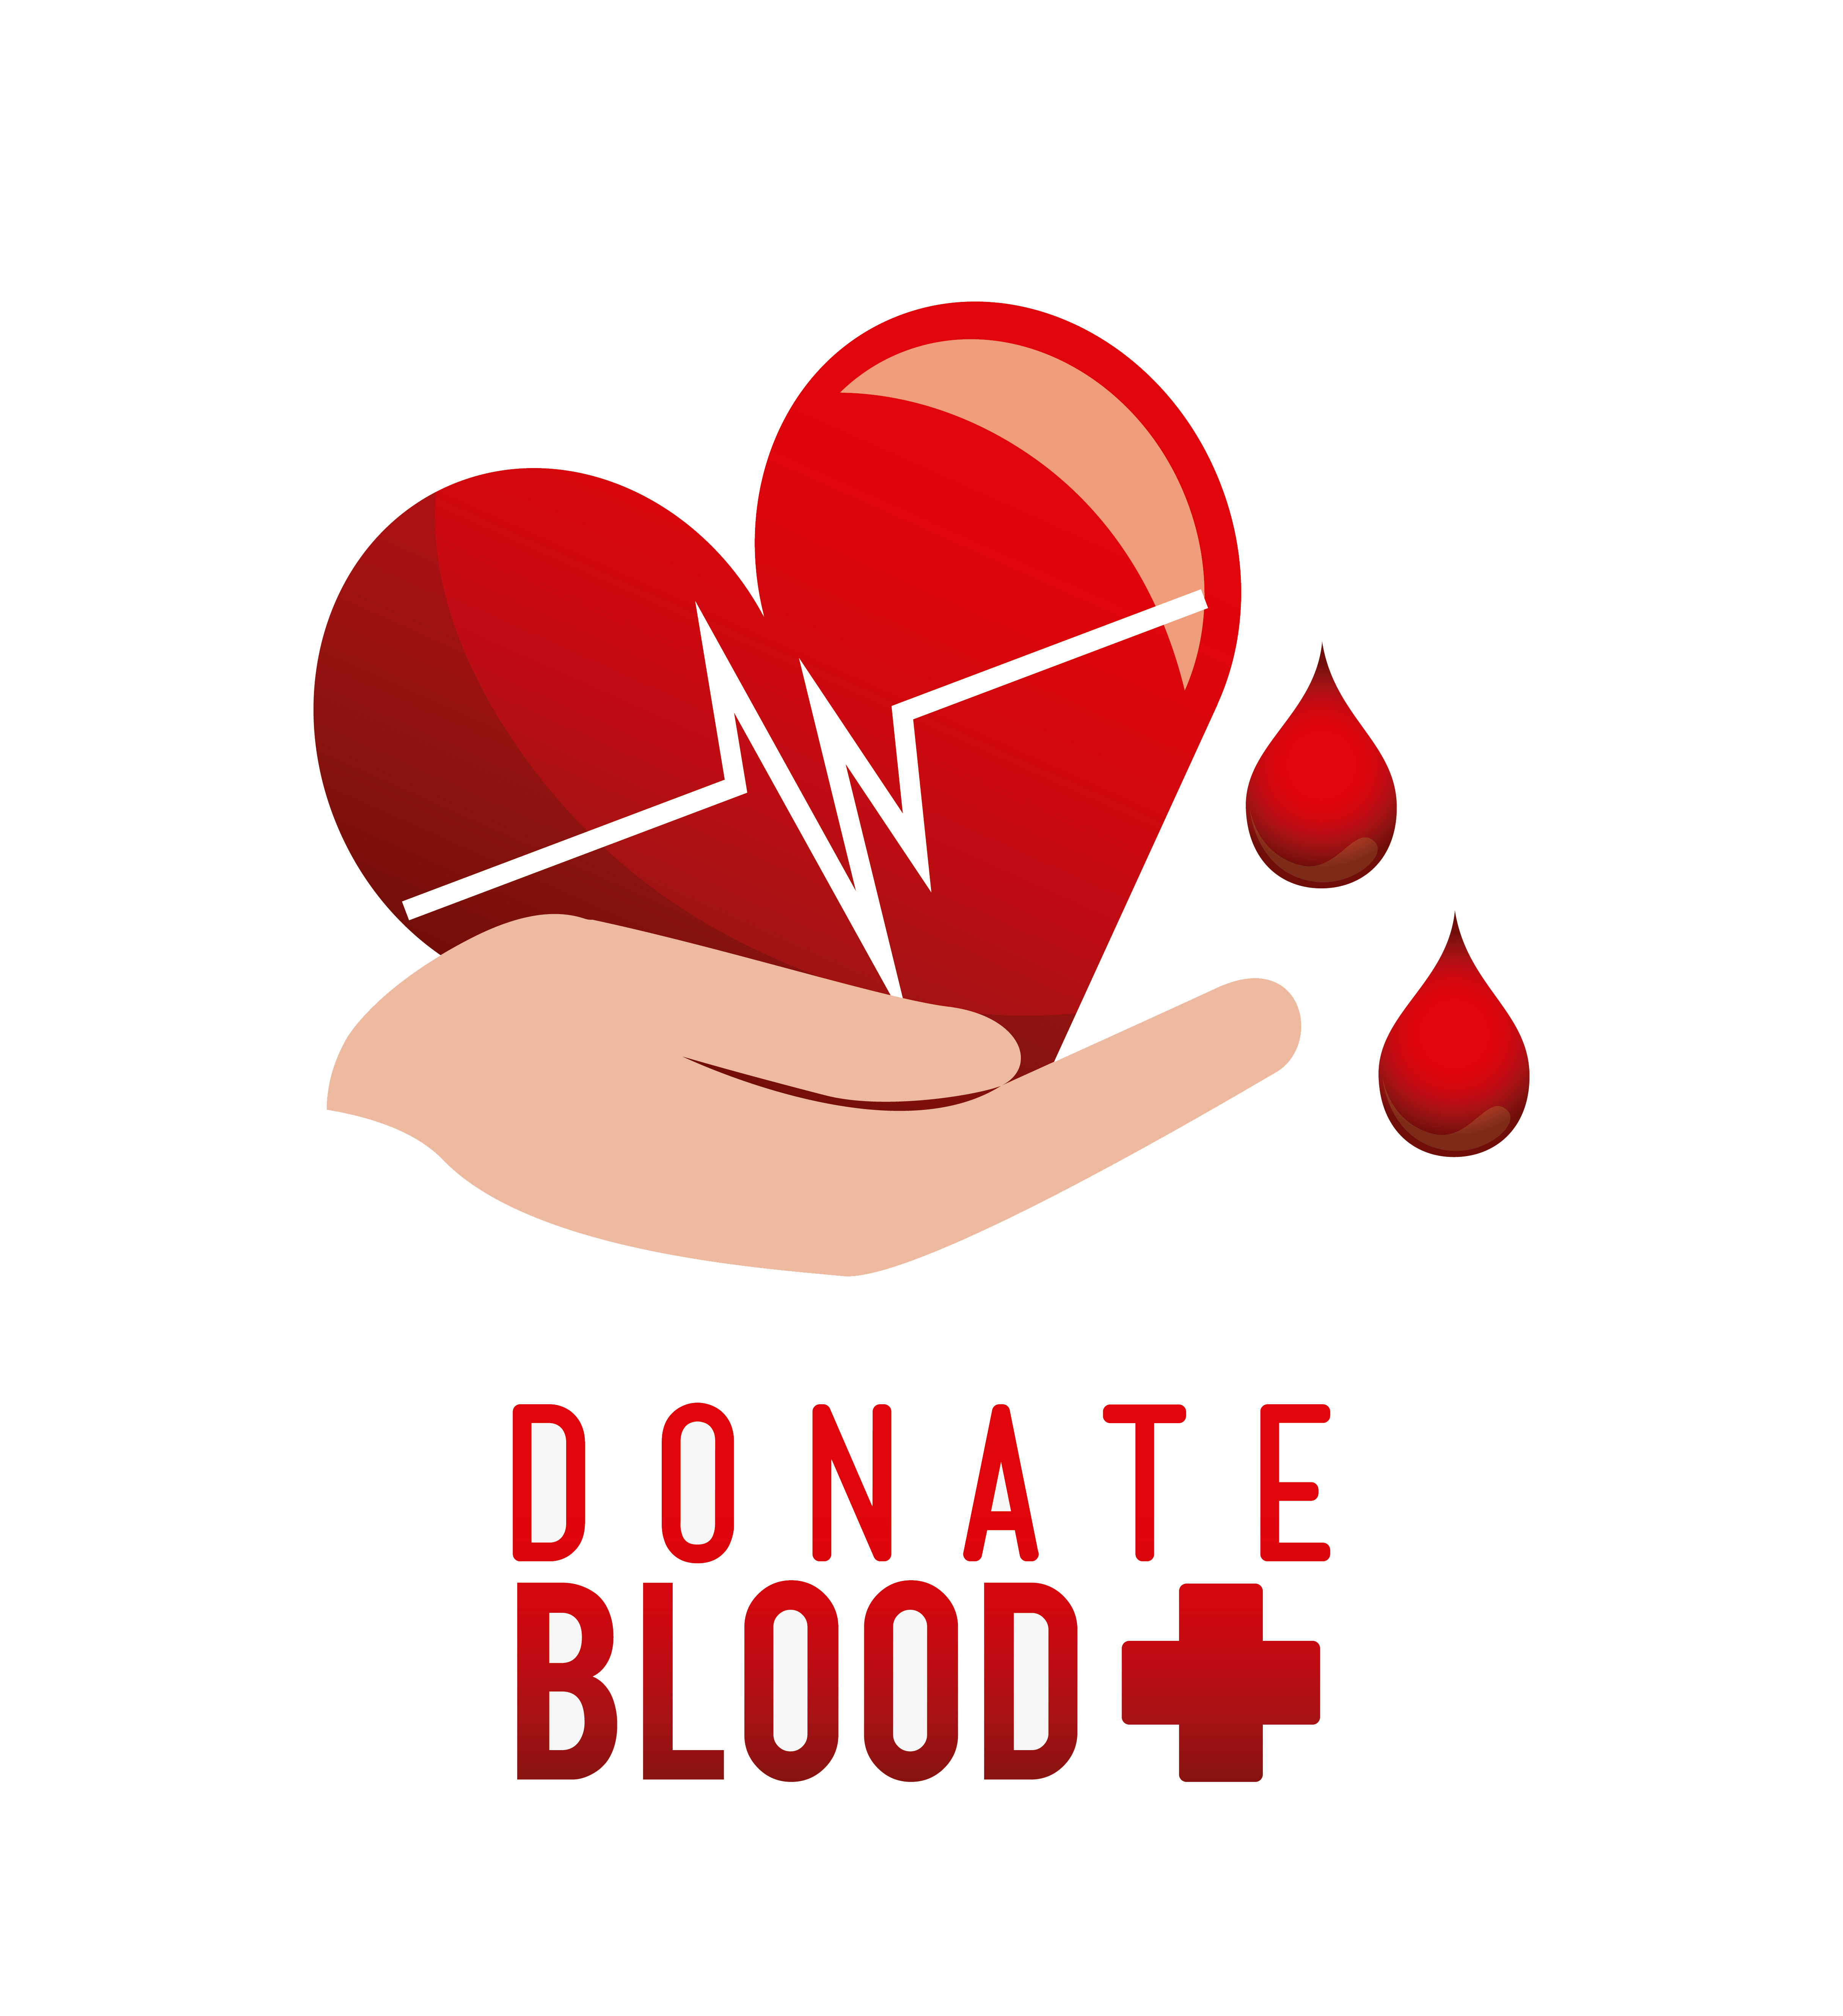 Донорство значок. Донорство крови. День донора символ. Эмблема донора крови. Донорство картинки